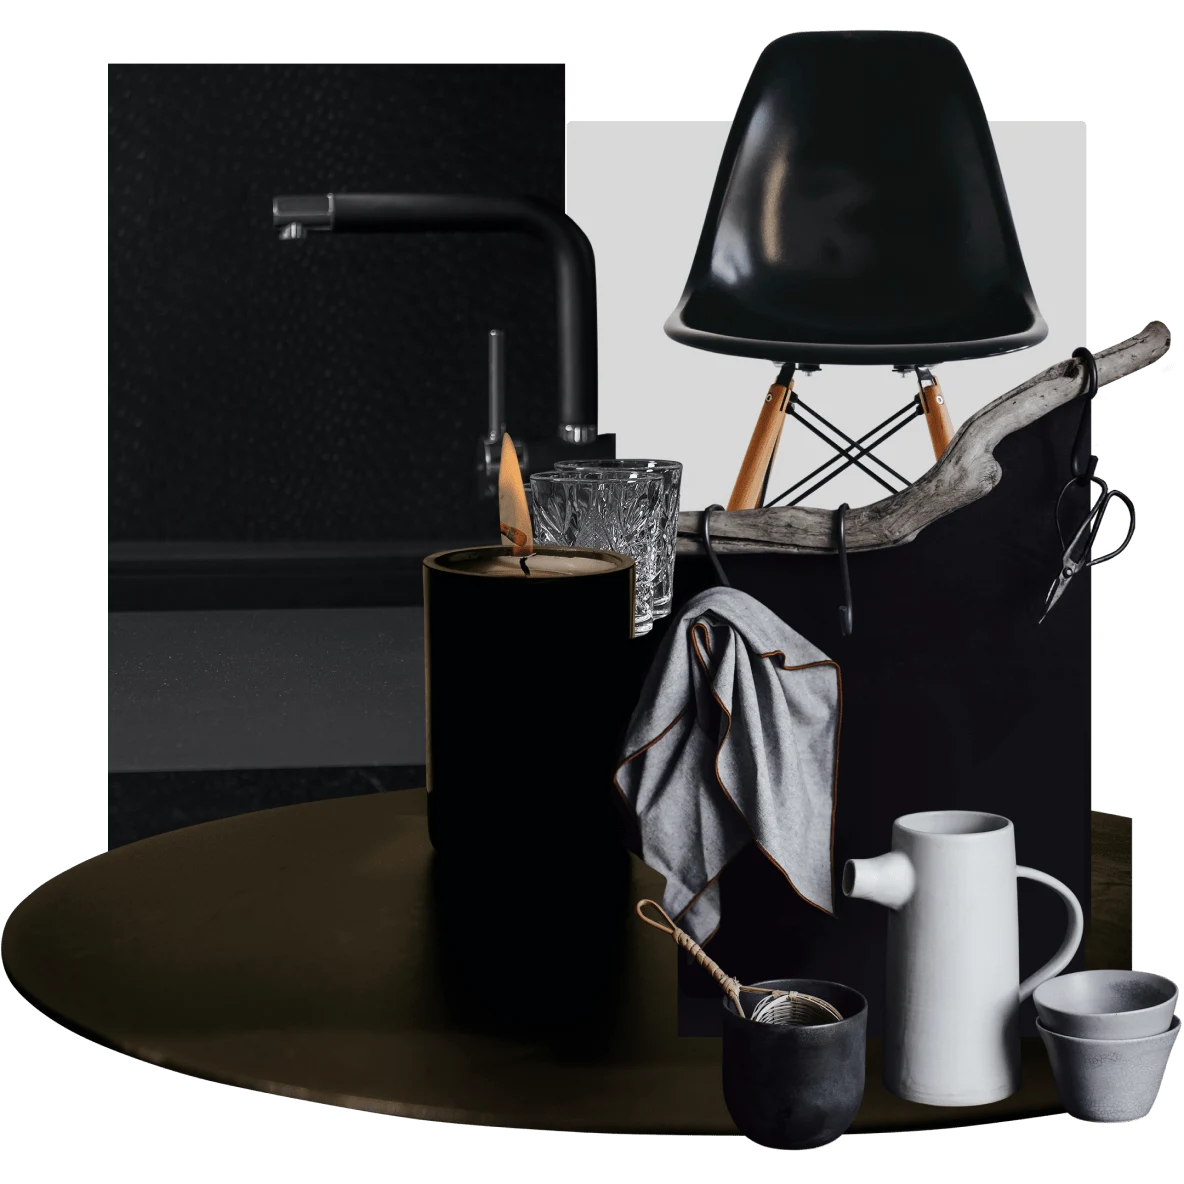 Bougie noire et tasses blanches et grises sur une table ronde noire. Fauteuil de bureau noir et robinet noir.